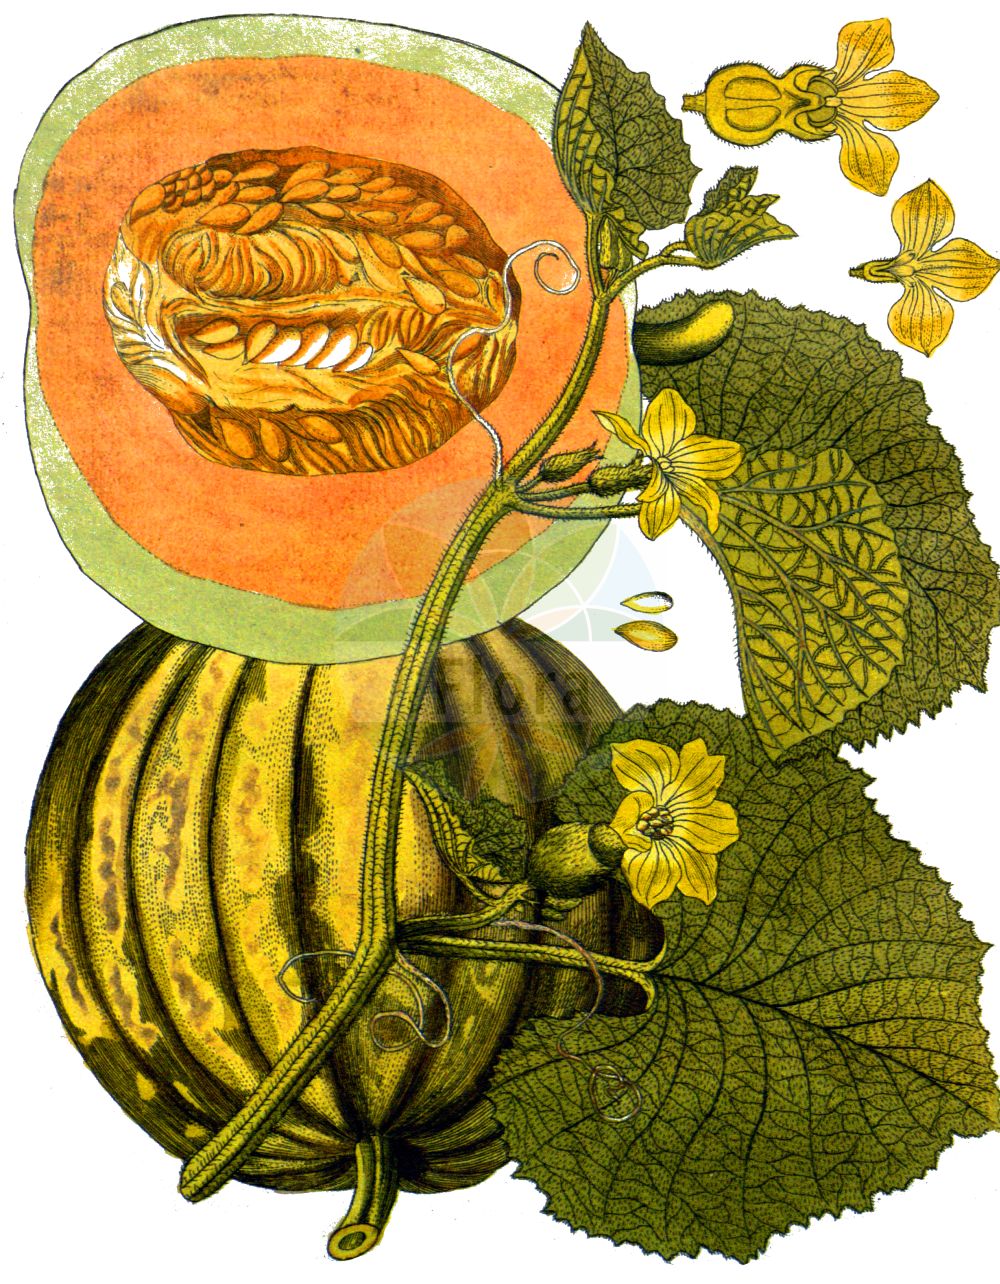 Historische Abbildung von Cucumis melo (Melon). Das Bild zeigt Blatt, Bluete, Frucht und Same. ---- Historical Drawing of Cucumis melo (Melon). The image is showing leaf, flower, fruit and seed.(Cucumis melo,Melon,Citrullus melo,Cucumis acidus,Cucumis callosus,Cucumis chate,Cucumis dudaim,Cucumis flexuosus,Cucumis melo,Cucumis trigonus,Melo agrestis,Melo dudaim,Melo sativus,Cucumis,Cucurbitaceae,Kürbisgewächse,Cucurbit family,Blatt,Bluete,Frucht,Same,leaf,flower,fruit,seed,Vietz (1800-1822))